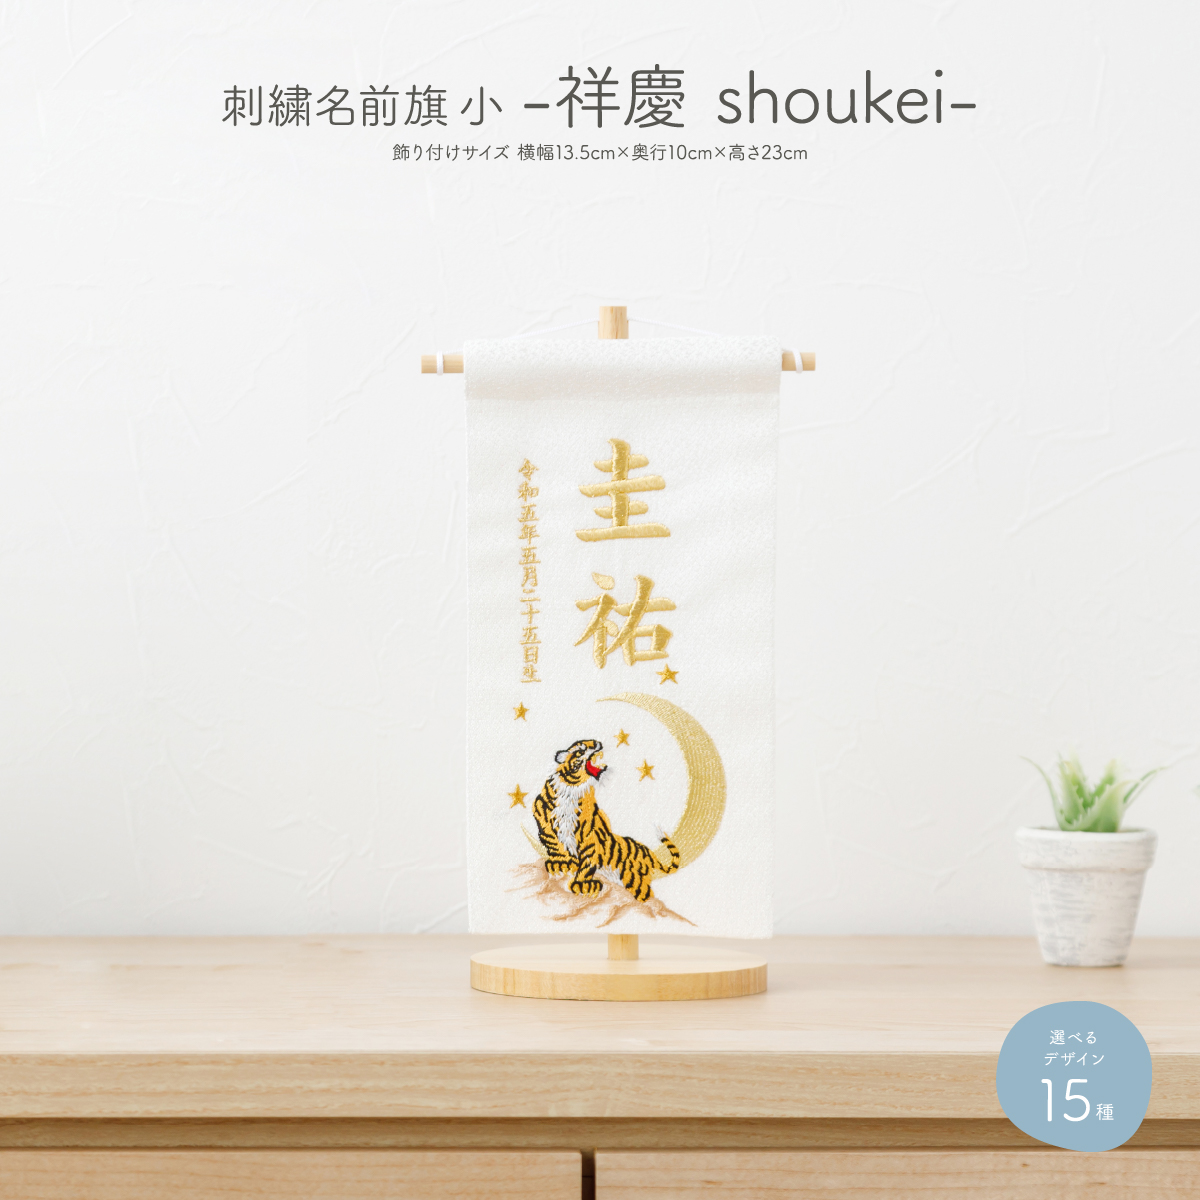 刺繍名前旗 -祥慶 shoukei- 小(20)